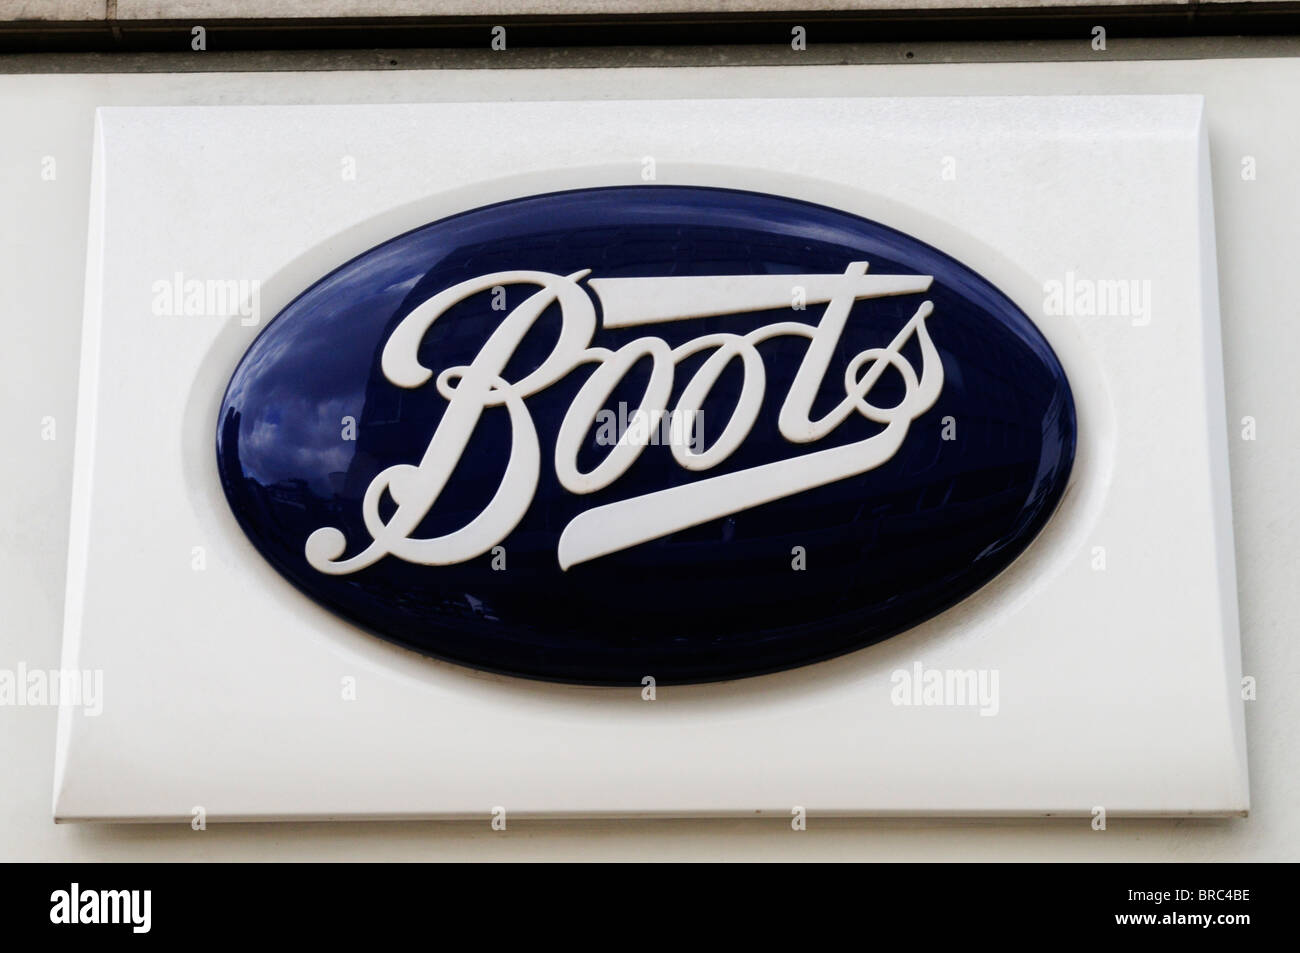 Boots pharmacie logo signe symbole, London, England, UK Banque D'Images